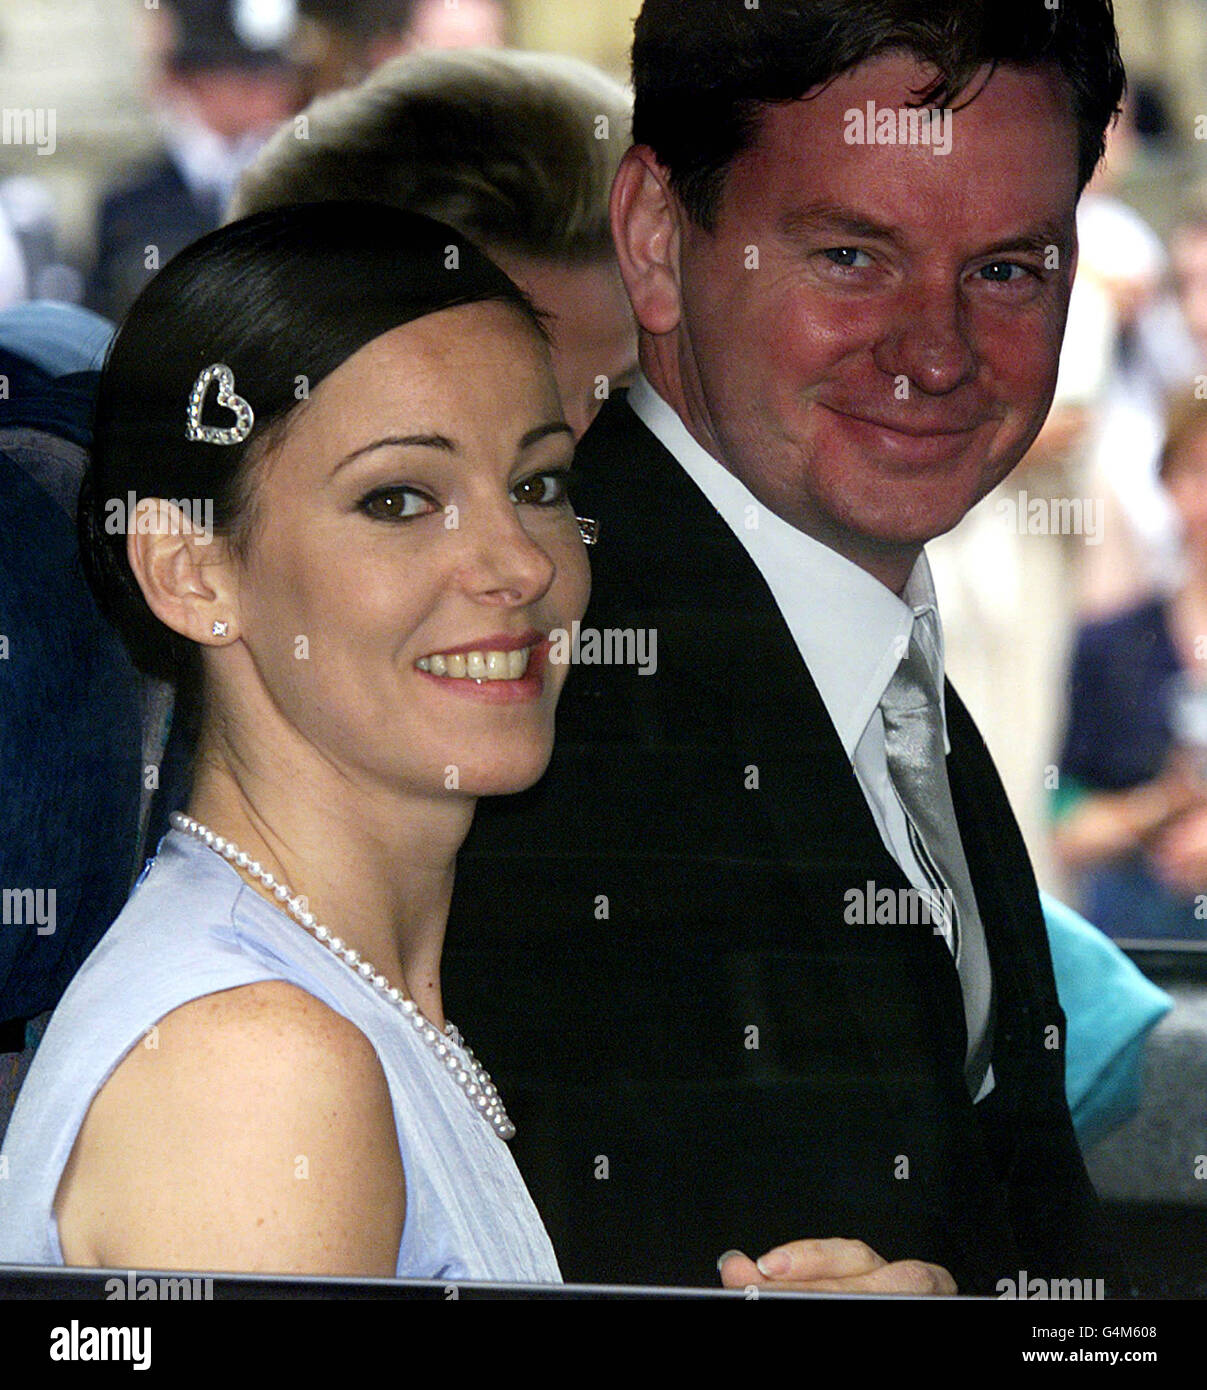 Royal wedding/Henshall & Sinclair Stock Photo